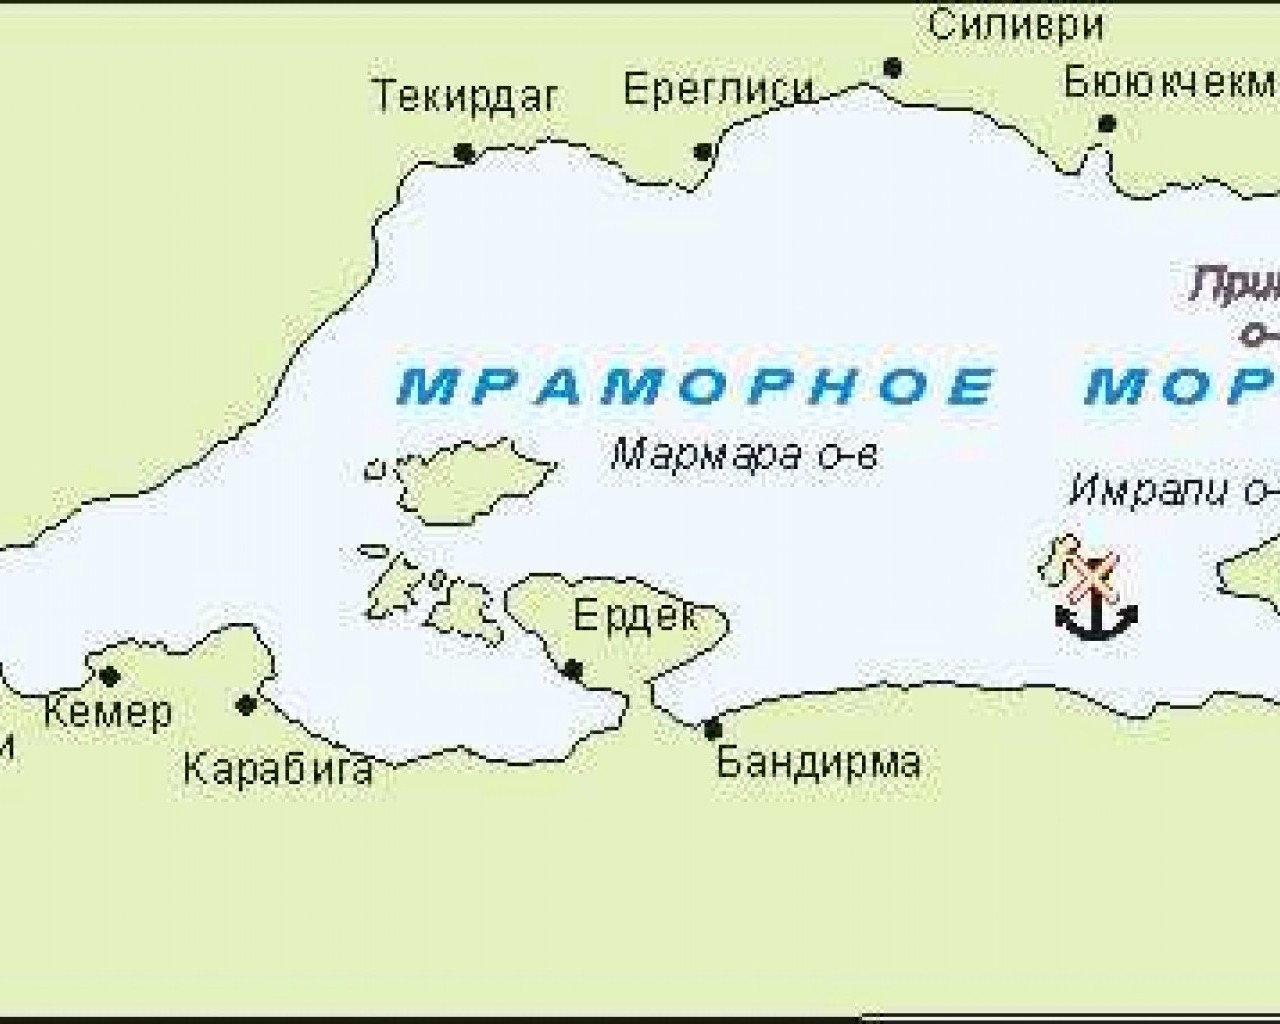 Тайны и загадки Мраморного моря - открываем карту и осознаем его величие